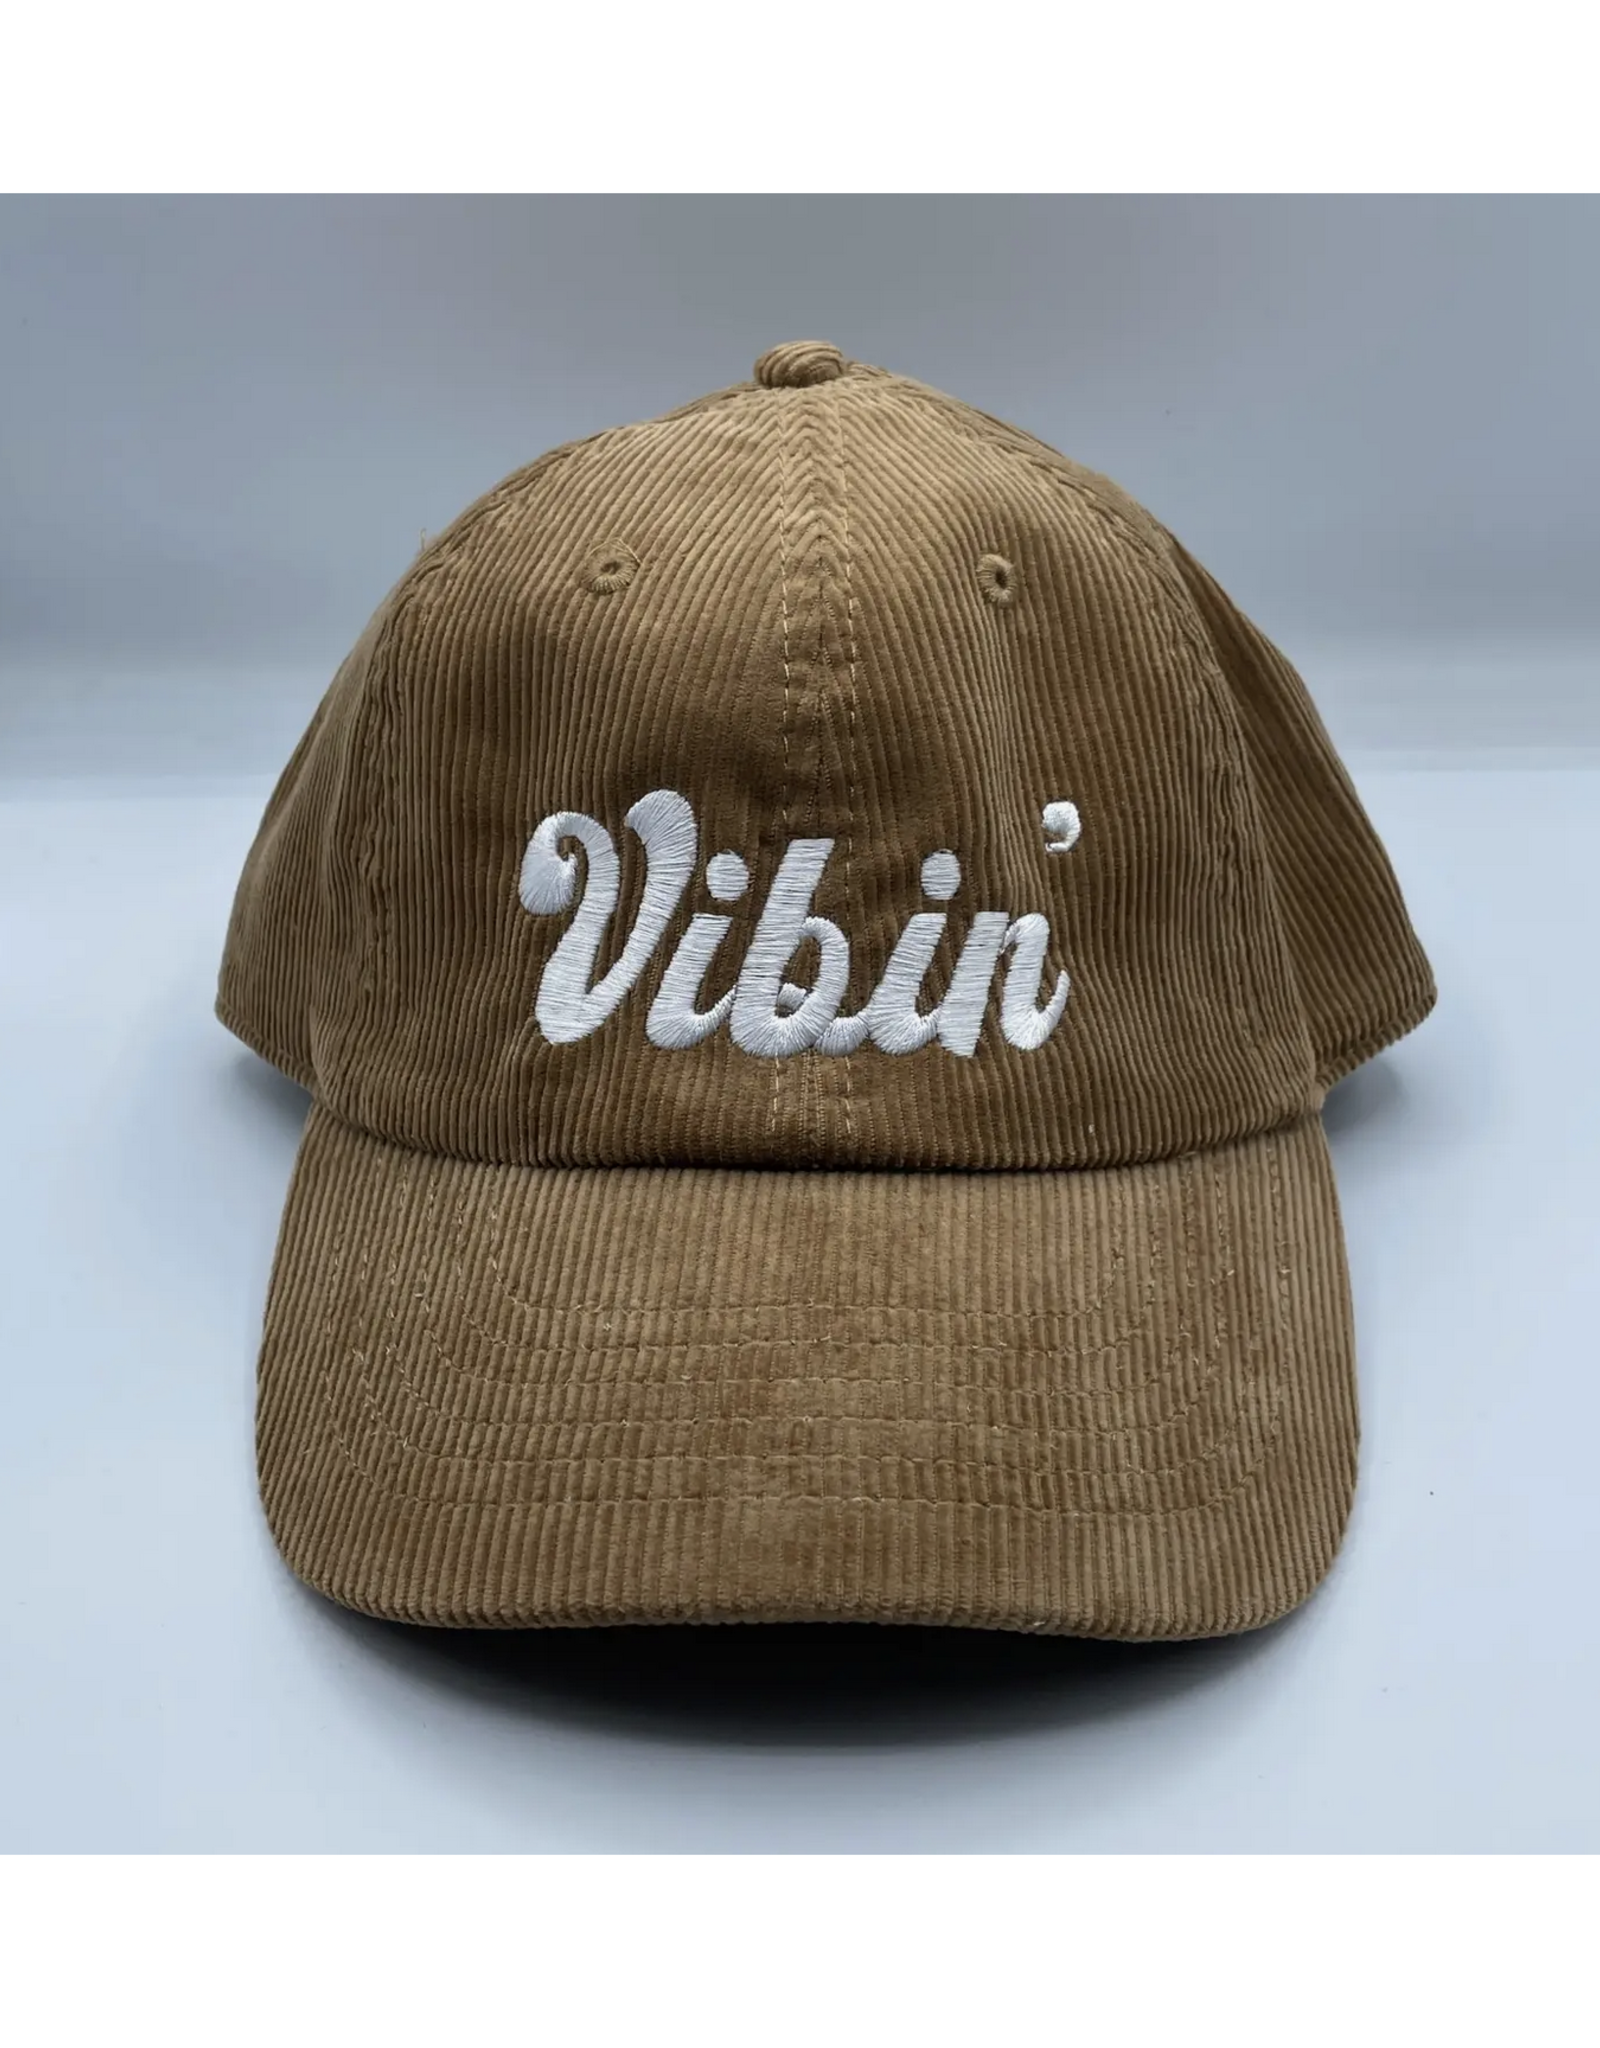 Vibin' Corduroy Hat - White